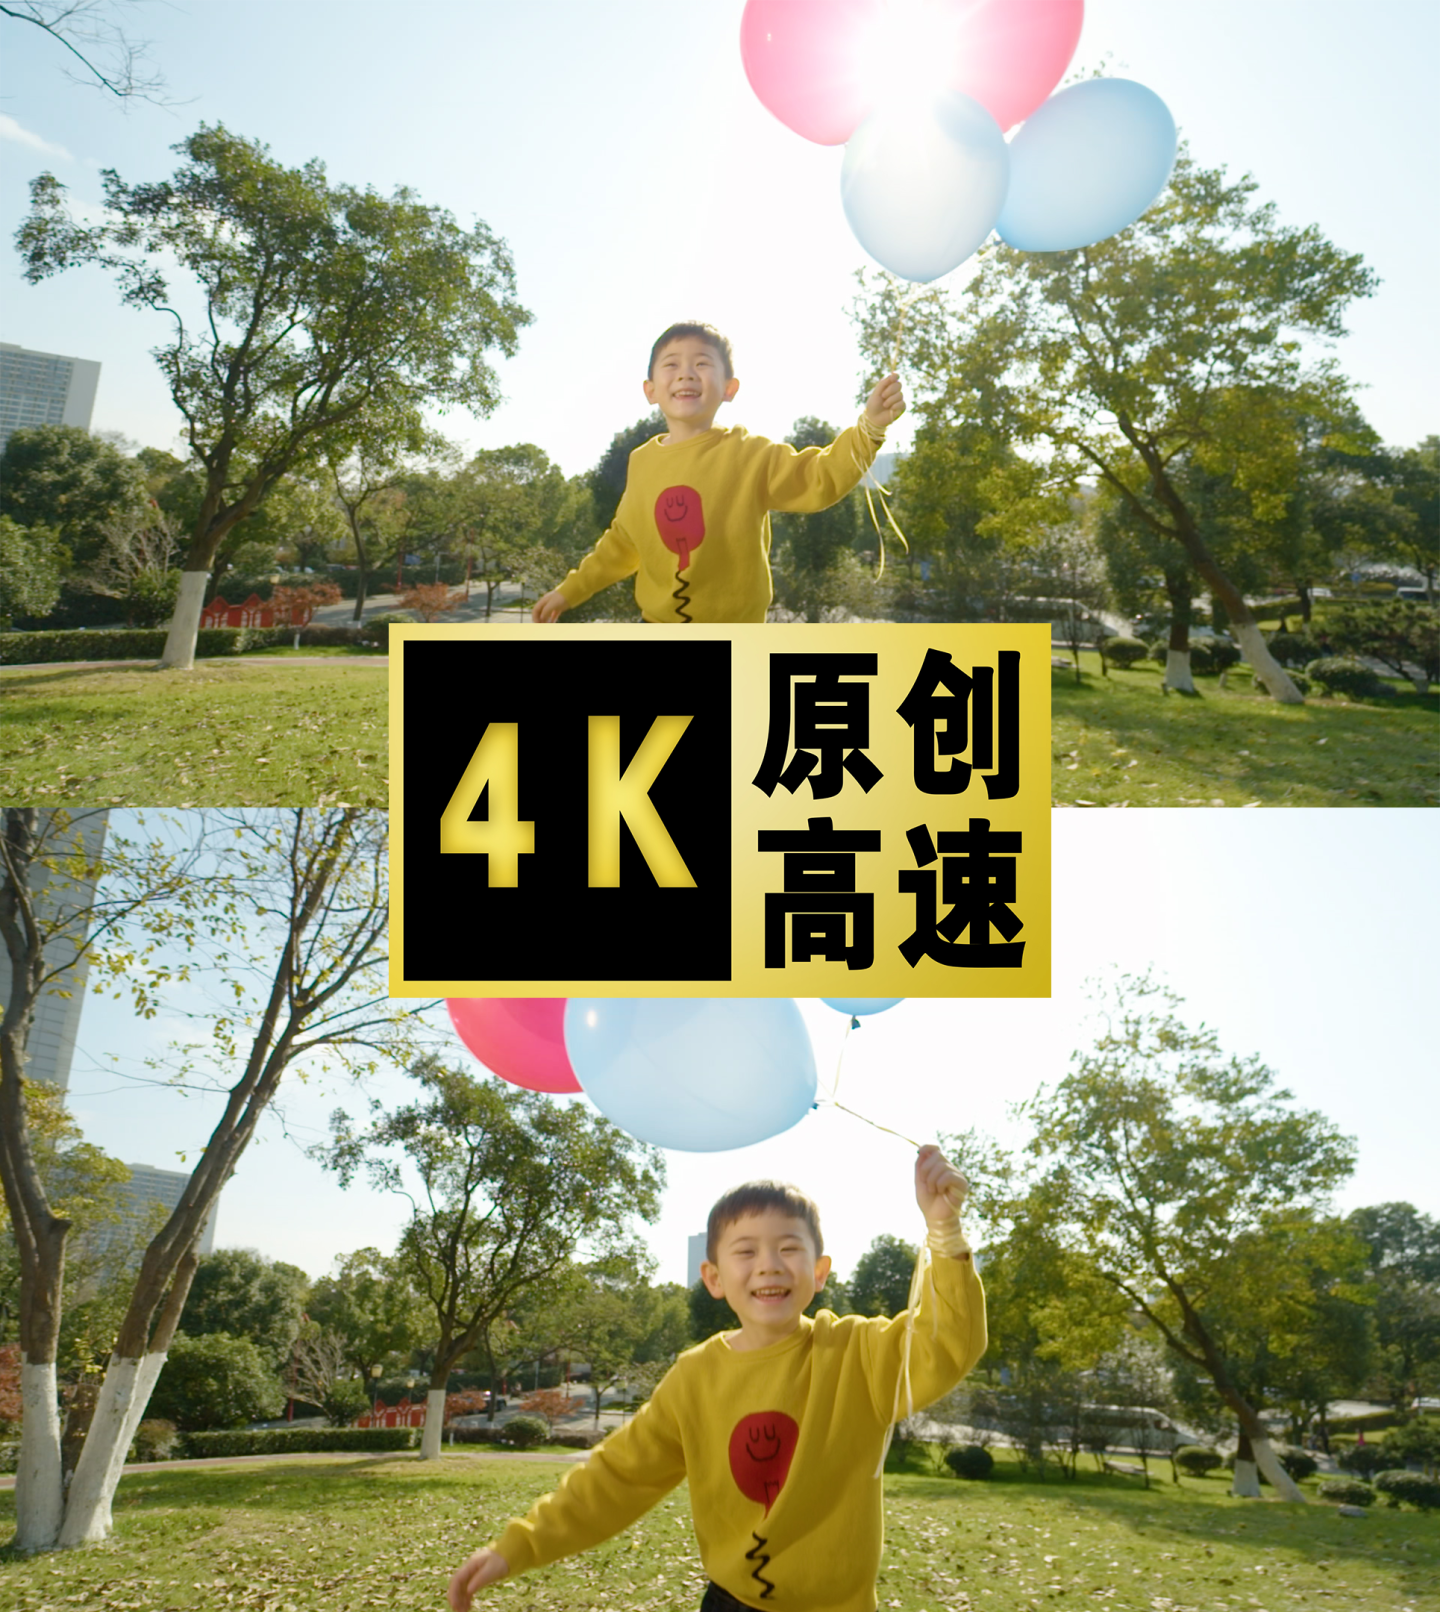 【广告级画质】小男孩拿着气球跑幸福生活